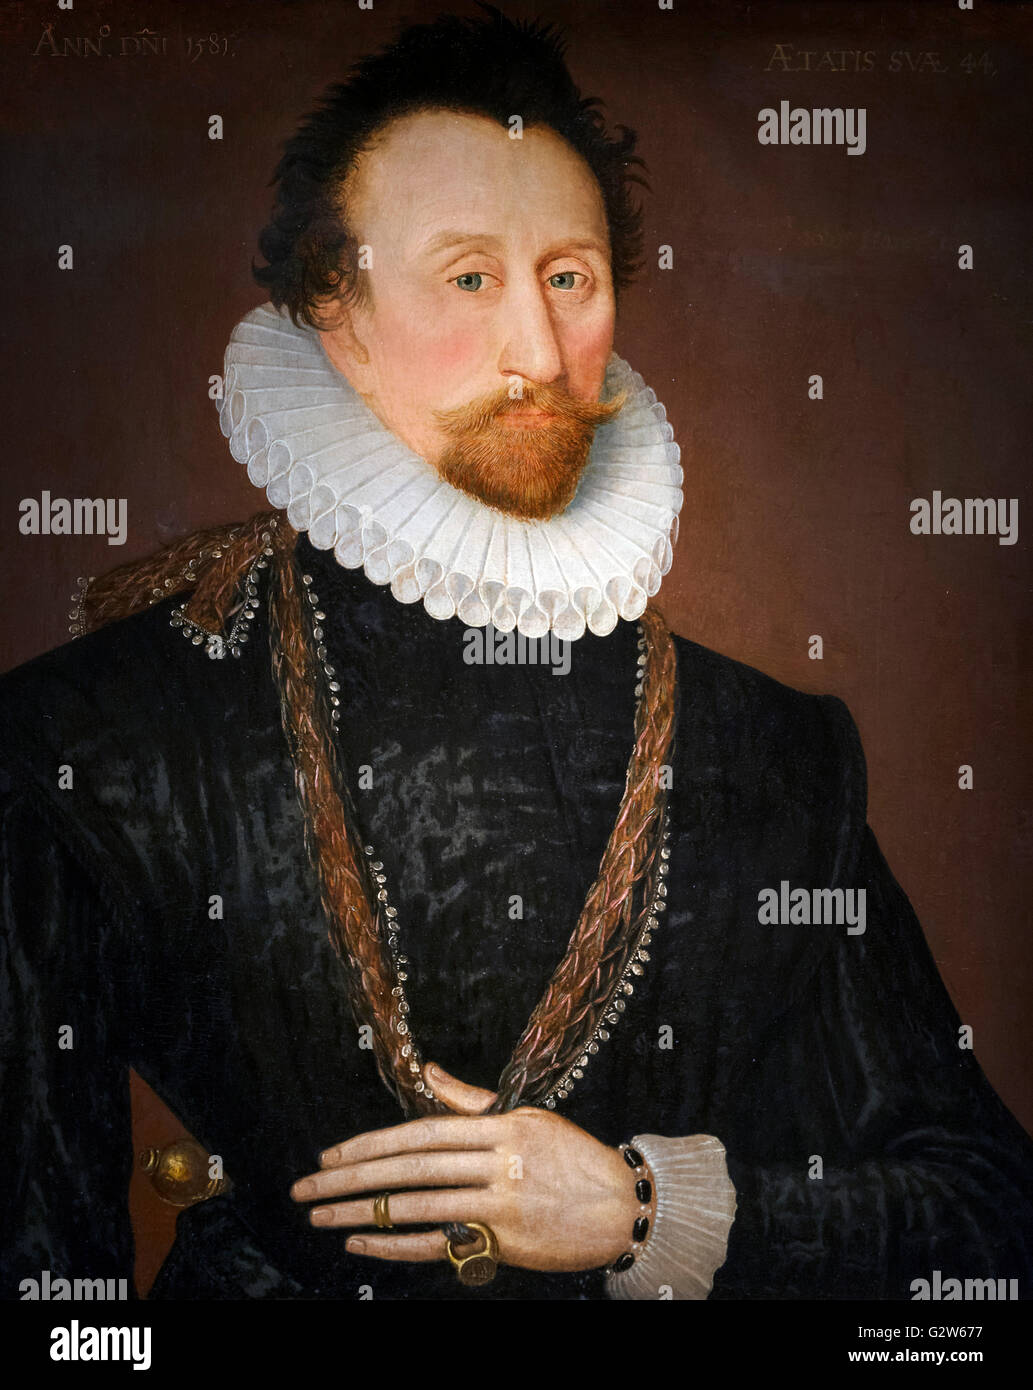 Admiral Sir John Hawkins (1532-1595), eine englische Marine-Kommandant, der ersten englischen Sklavenhändler und ein sehr erfolgreicher Kaufmann. Porträt, Öl auf Leinwand, Sprachschule, 1581. Stockfoto